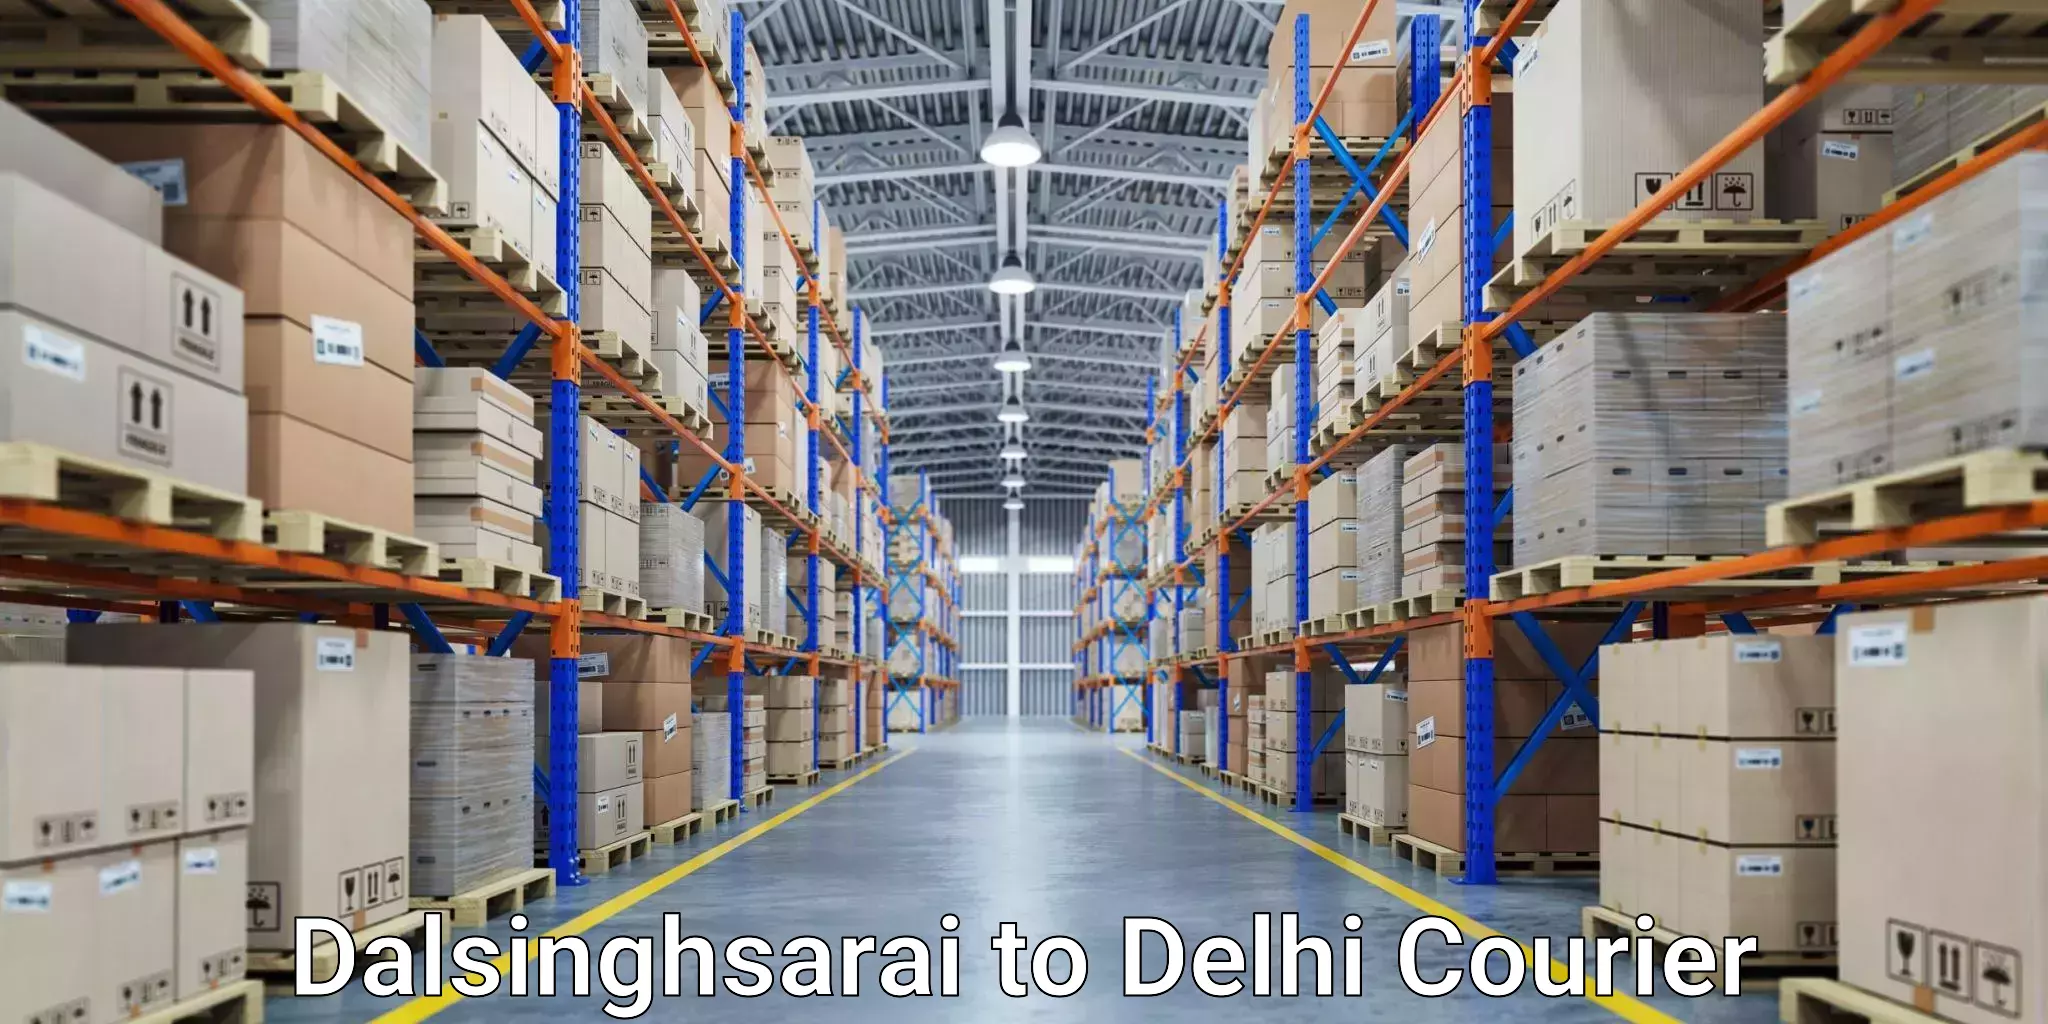 Domestic courier Dalsinghsarai to NIT Delhi